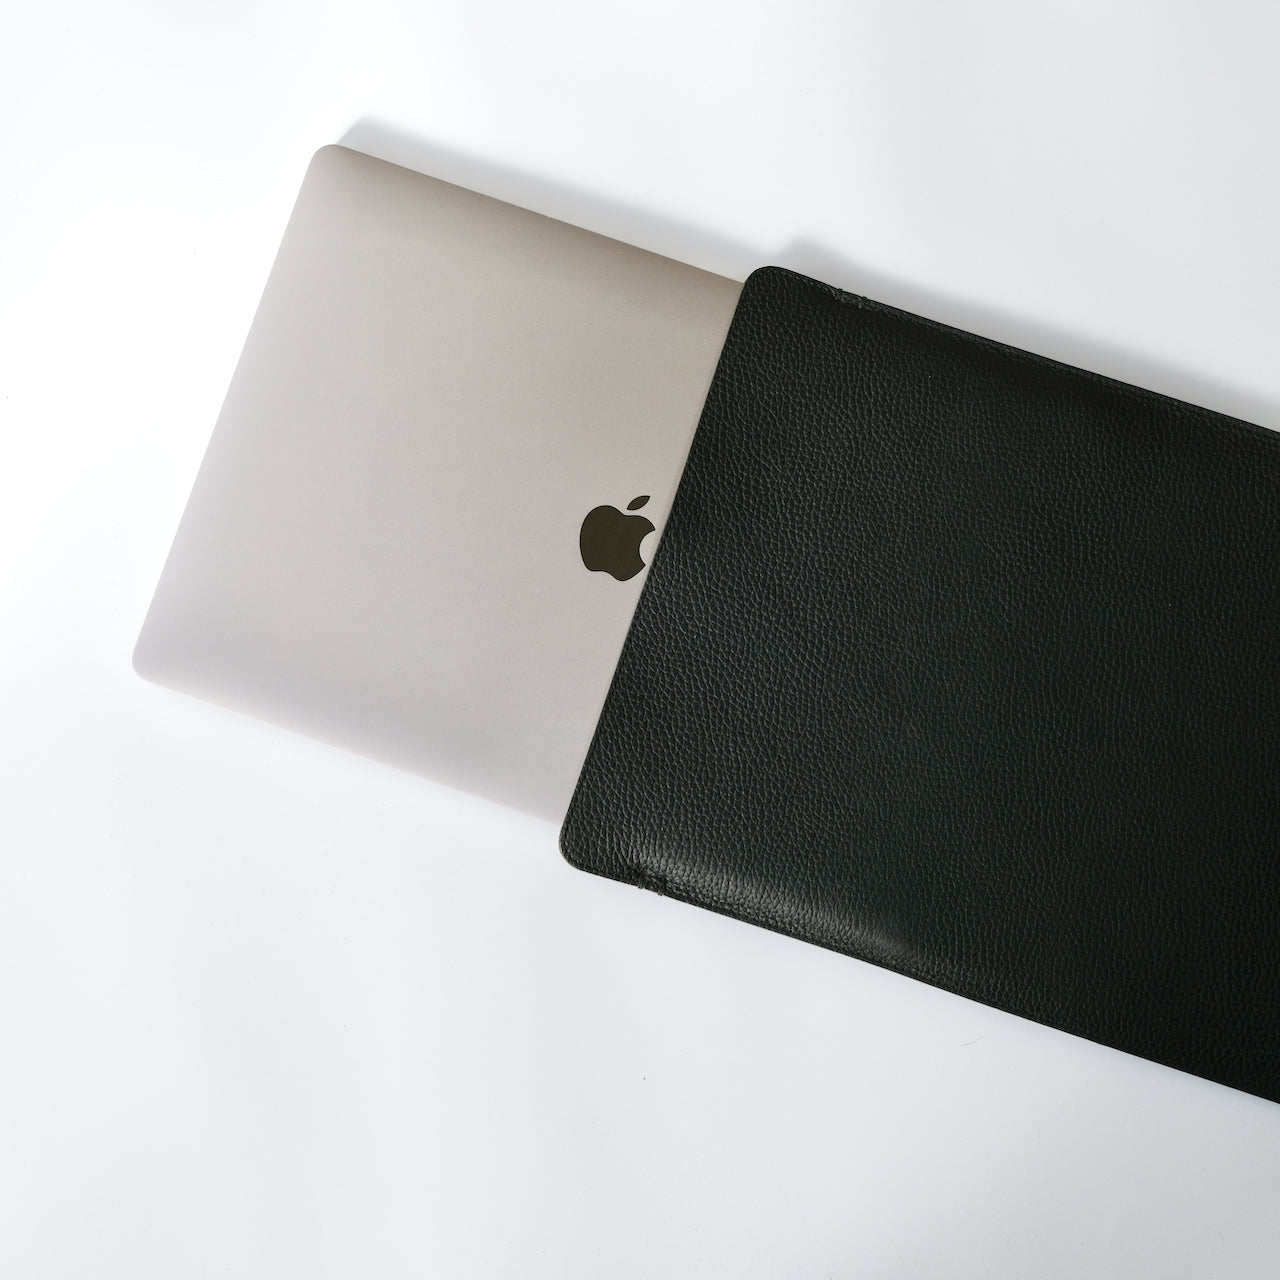 MacBook Pro 16 인치는 슬림하고 얇지 만 단단한 소매 케이스입니다.